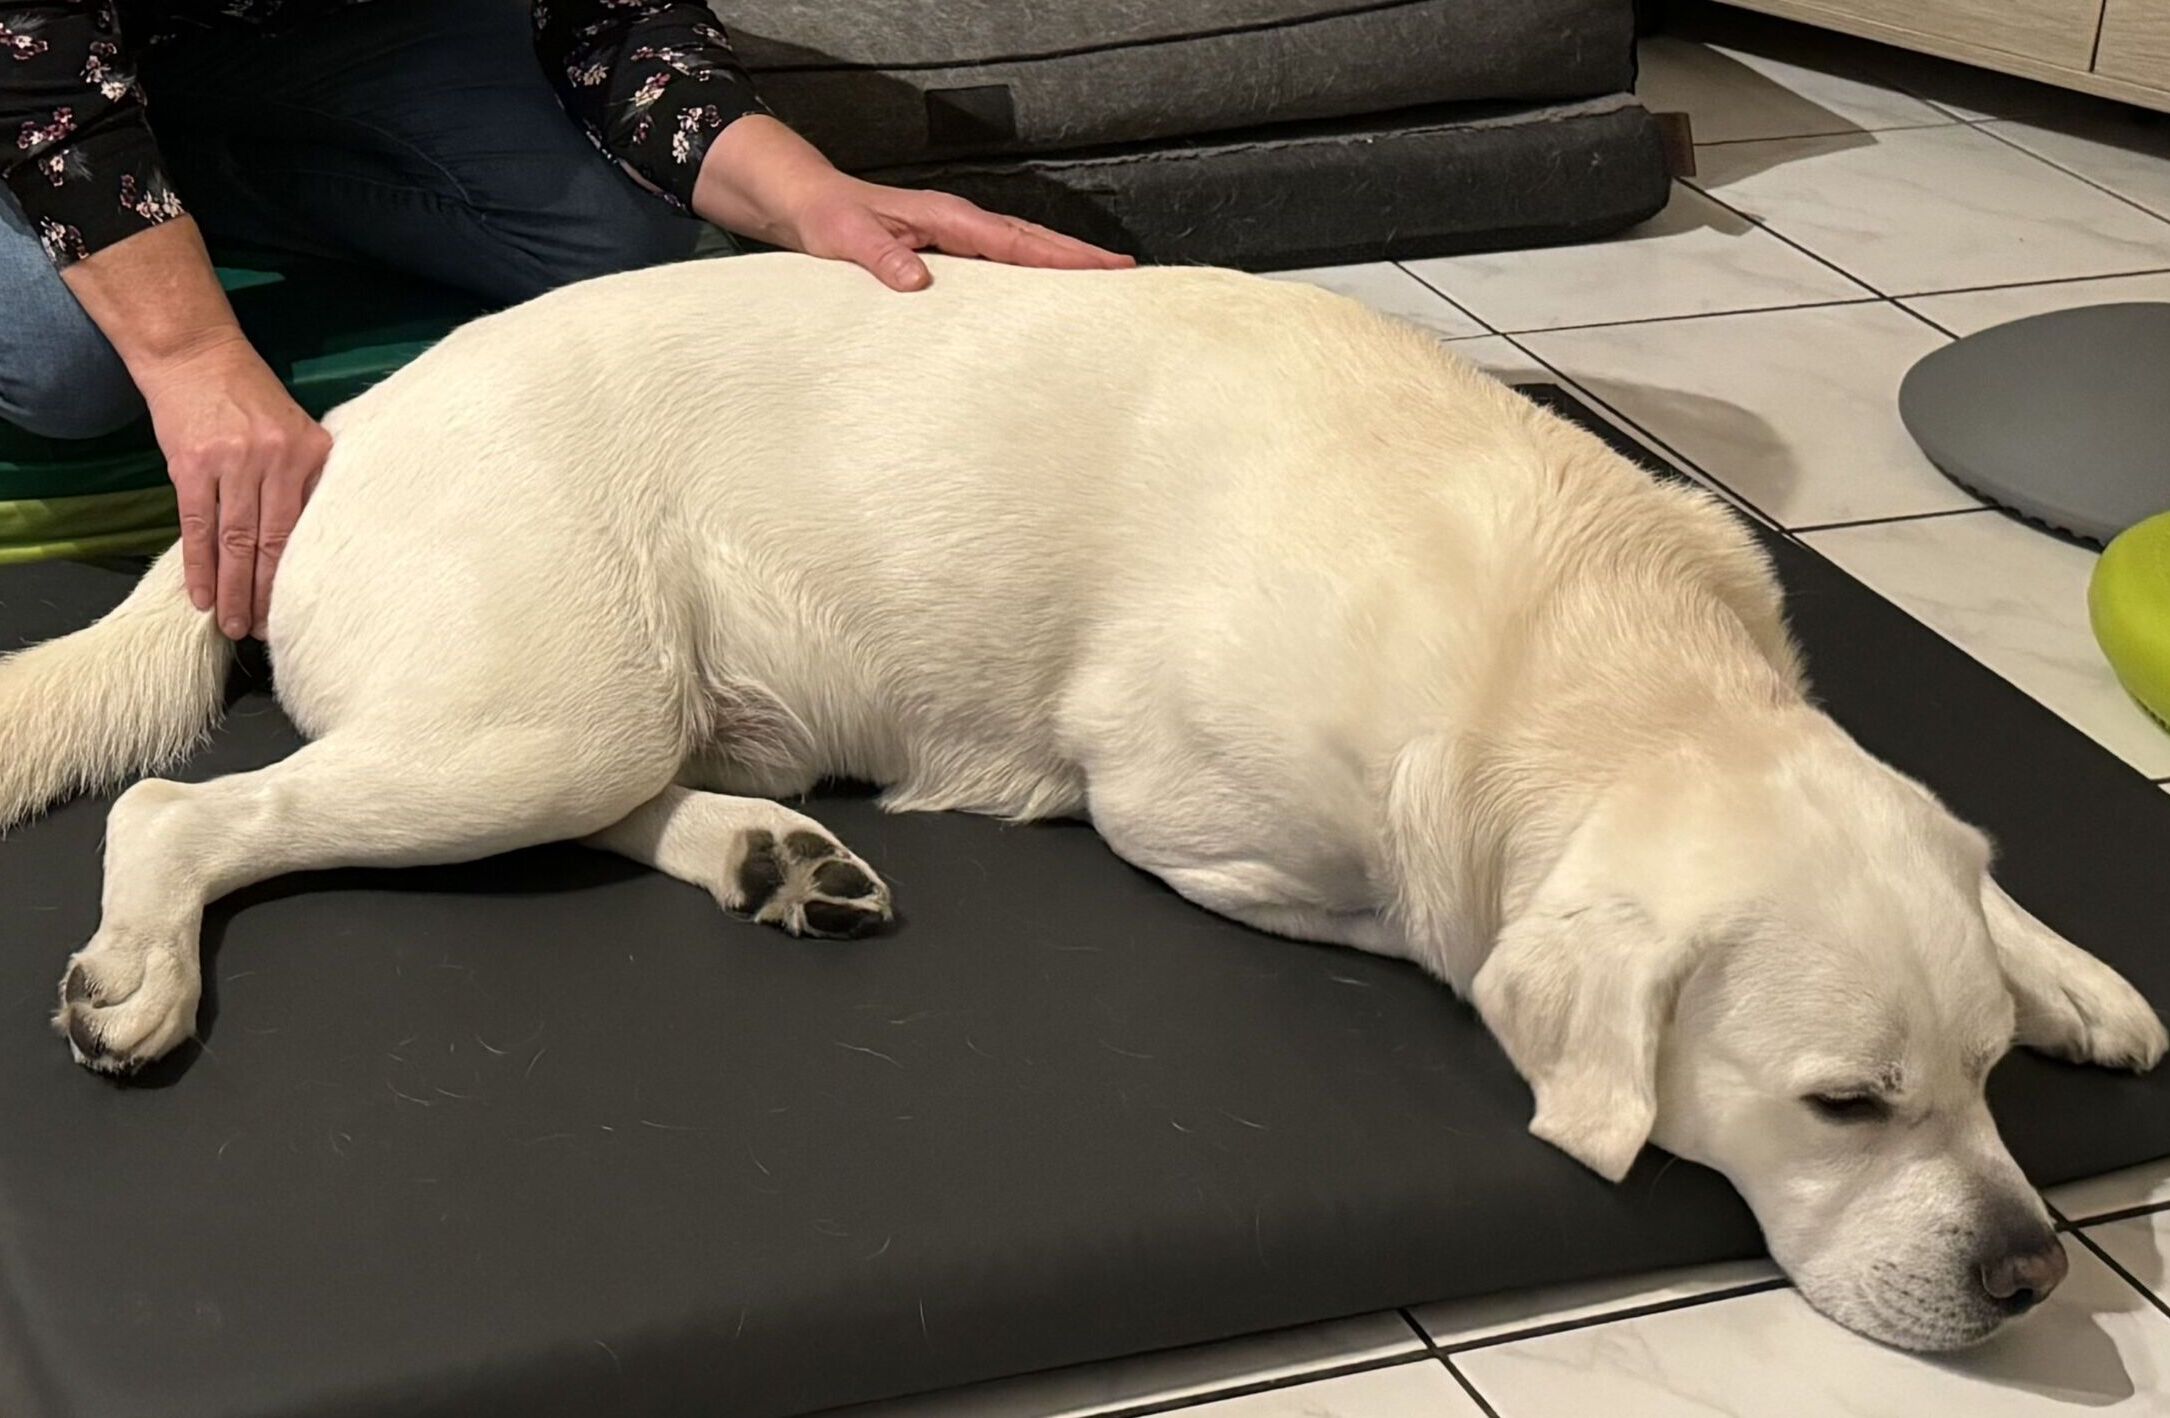 Hund liegt auf einer Matte, Therapeutin behandelt ihn mit Cranio Sakraler Therapie, Hände liegen auf dem Rücken des Hundes.